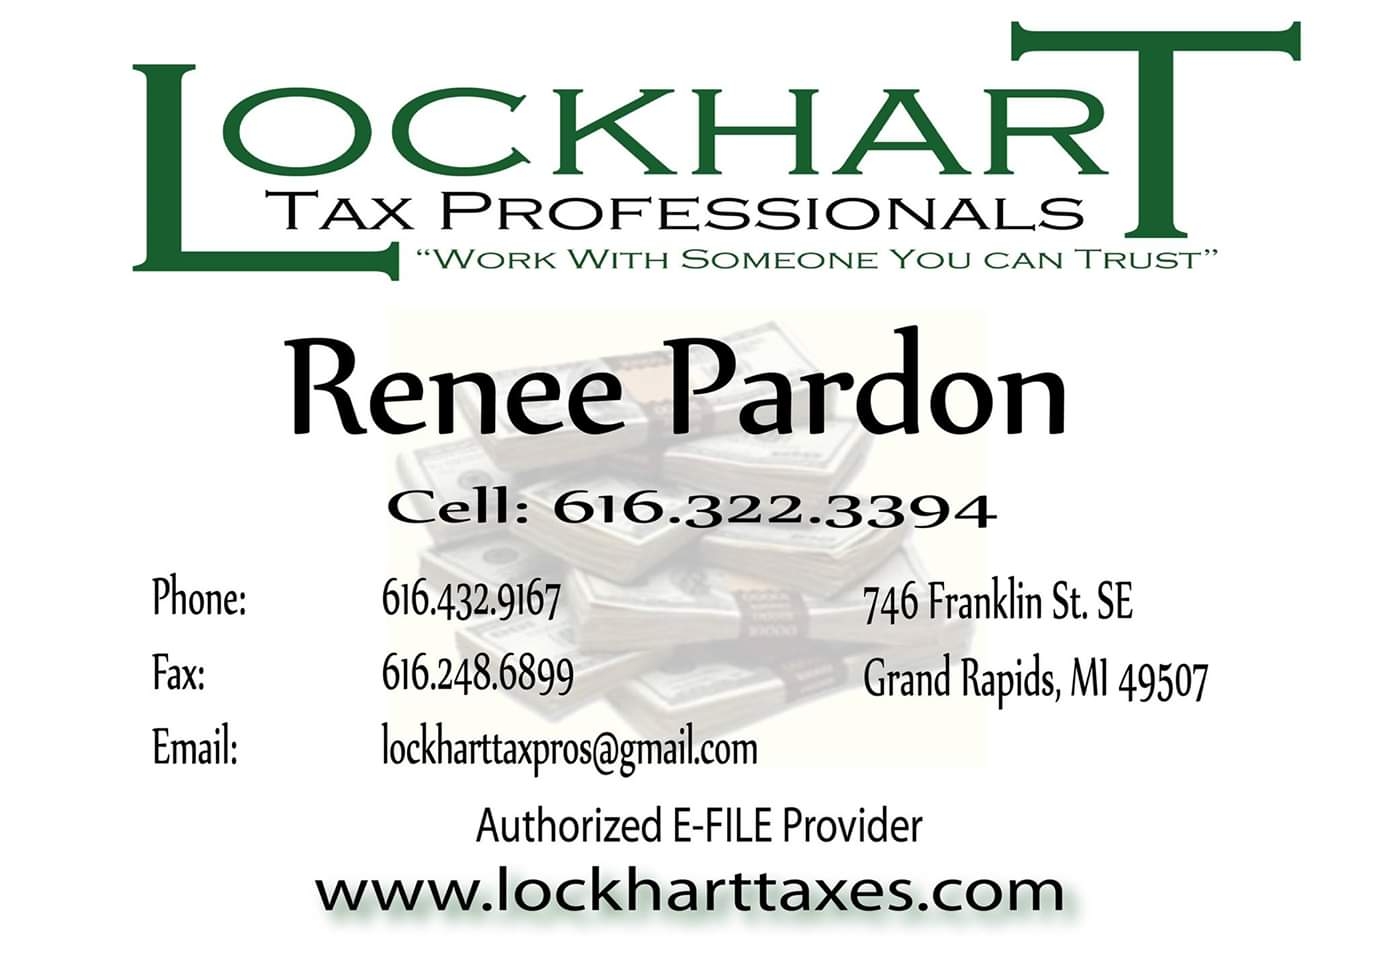 Lockhart Tax Professionals